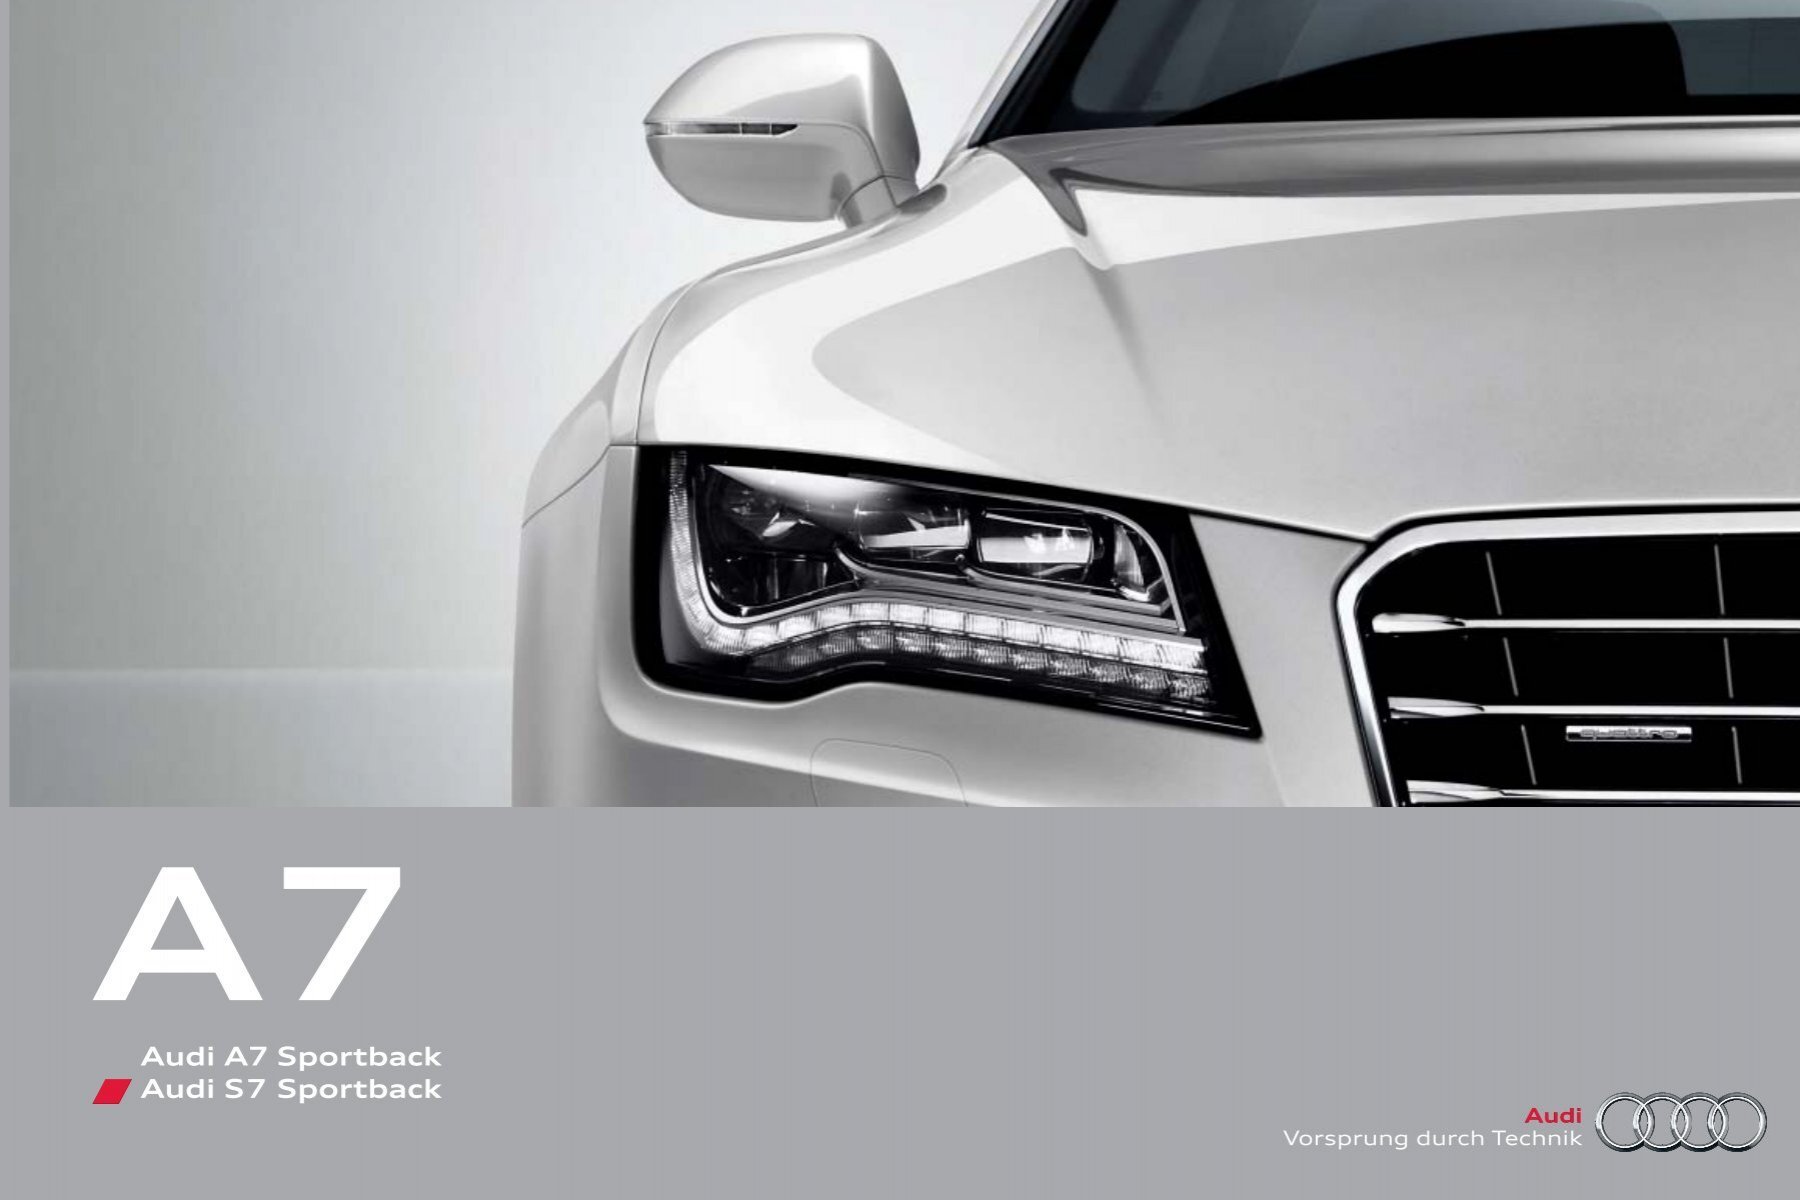 Katalog laden (6.7 MB) - Audi